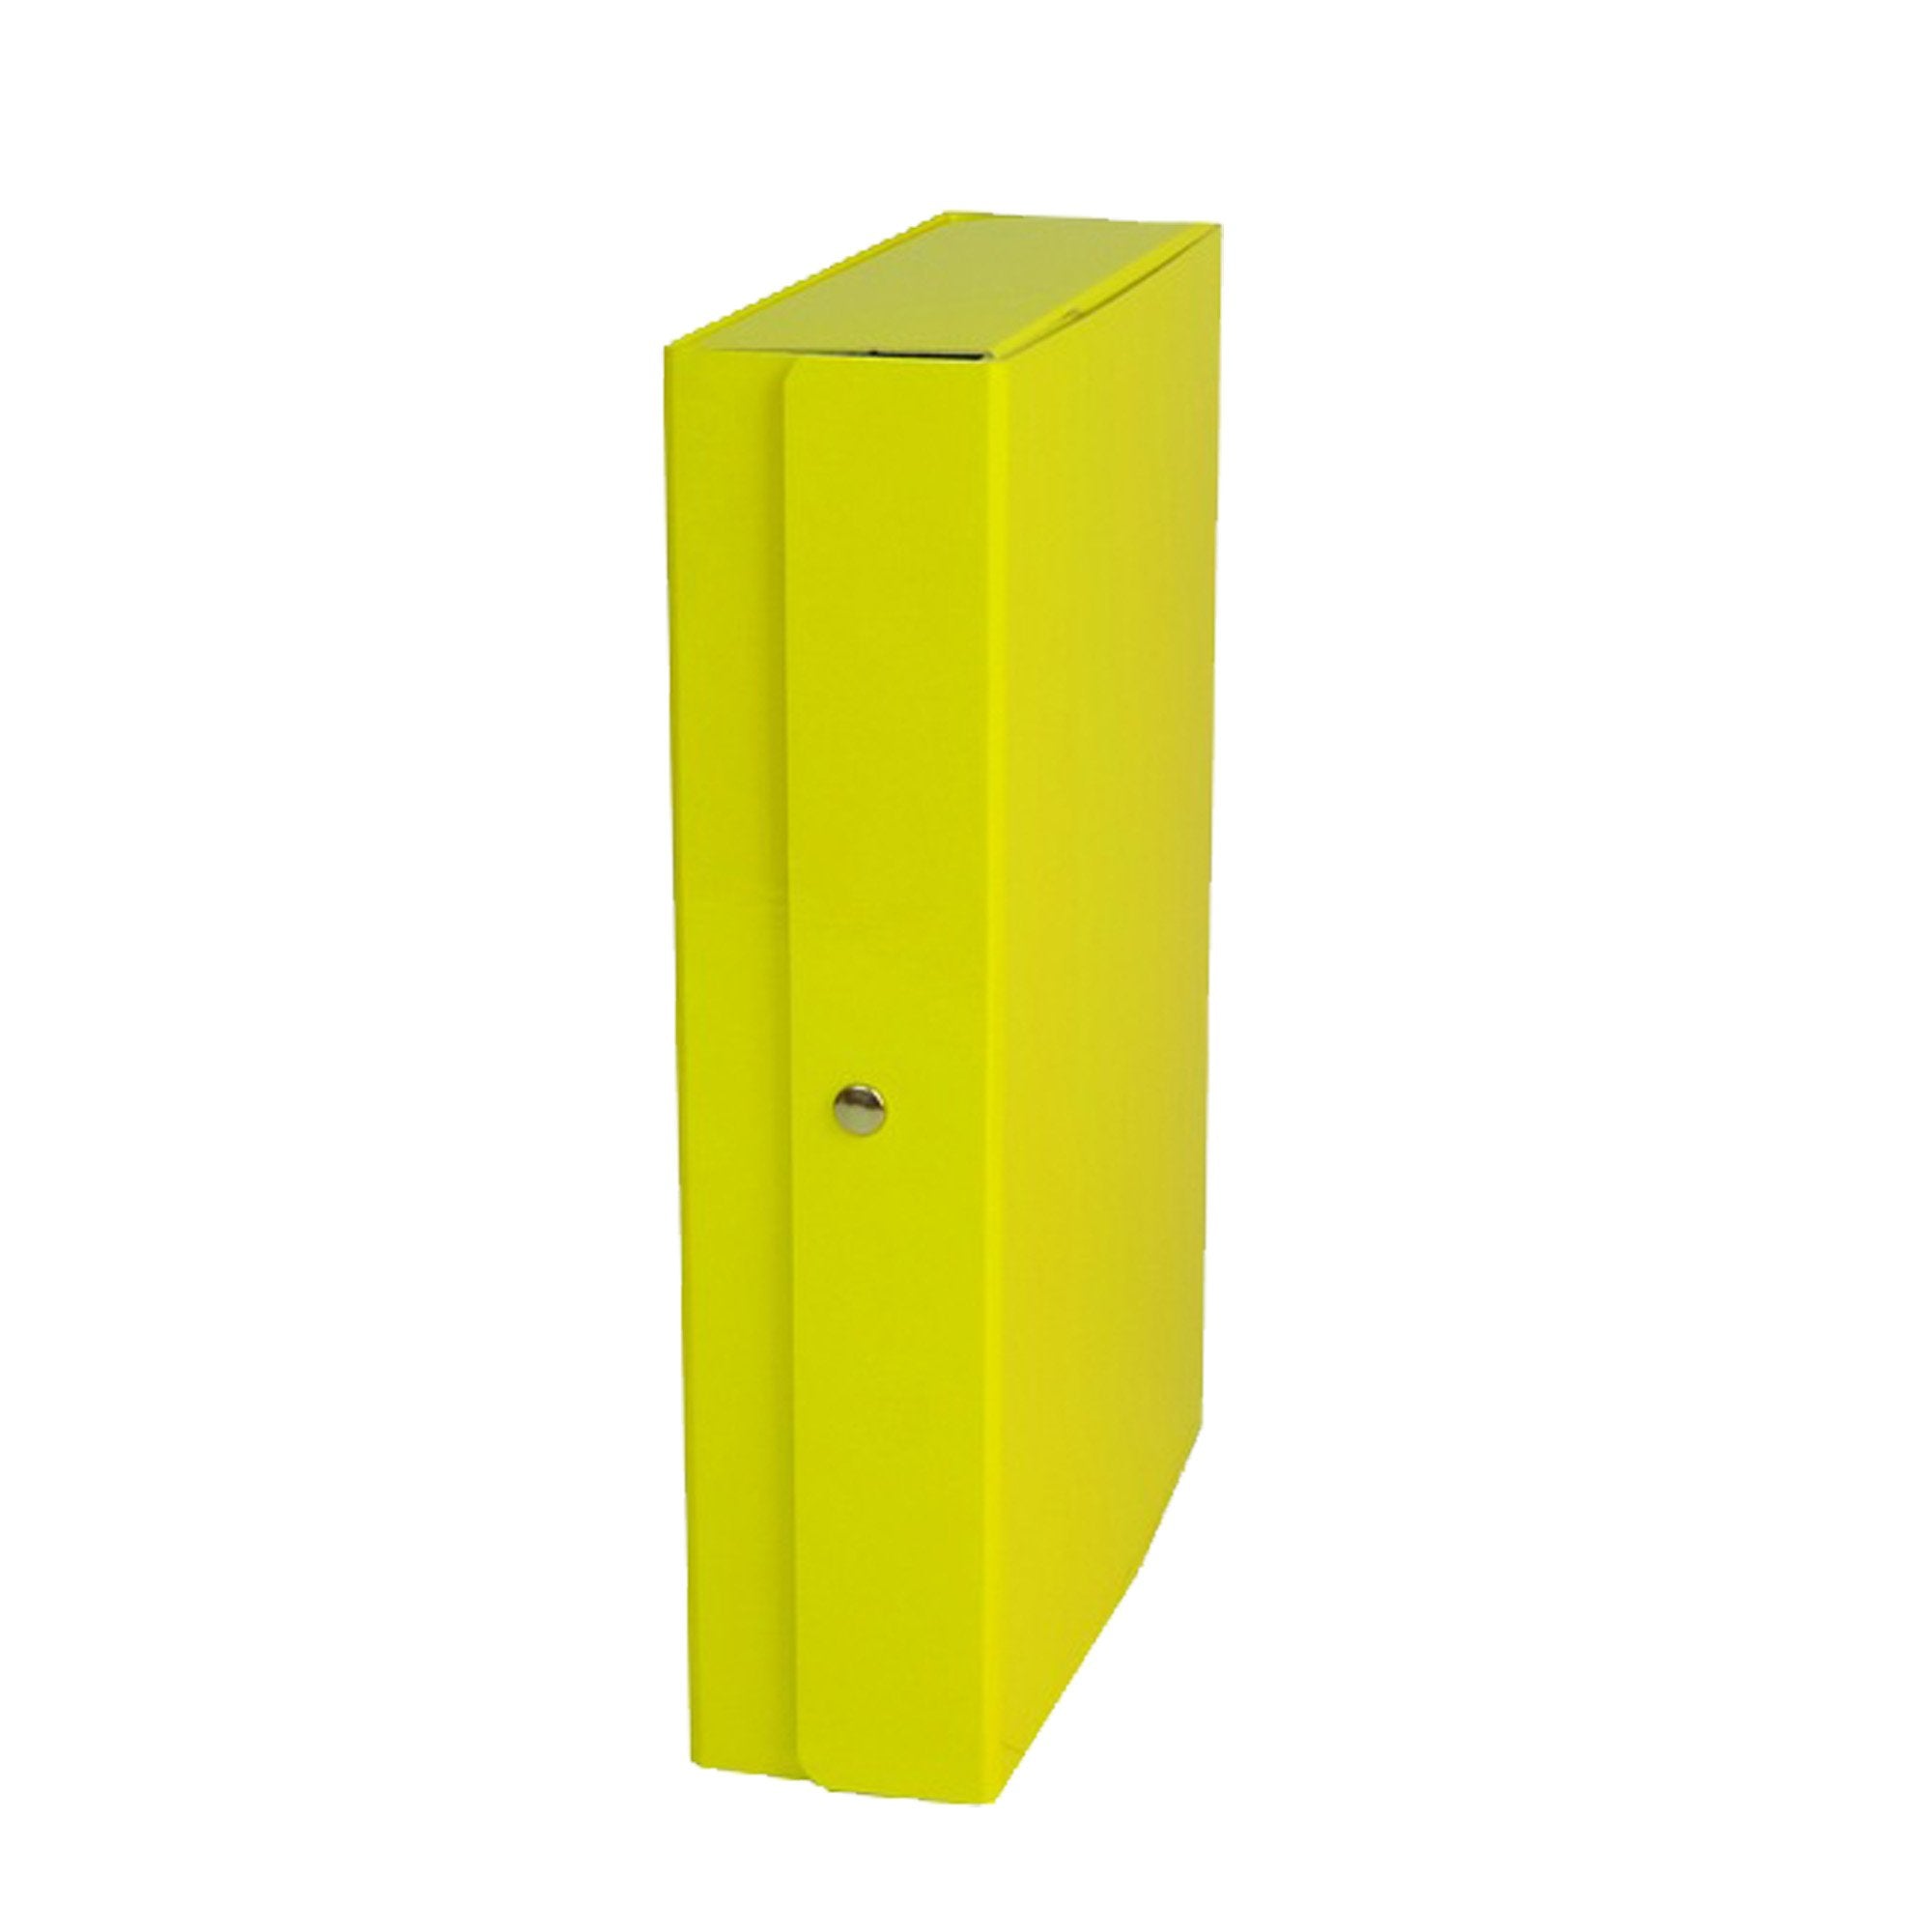 starline-scatola-progetto-10-giallo-glossy